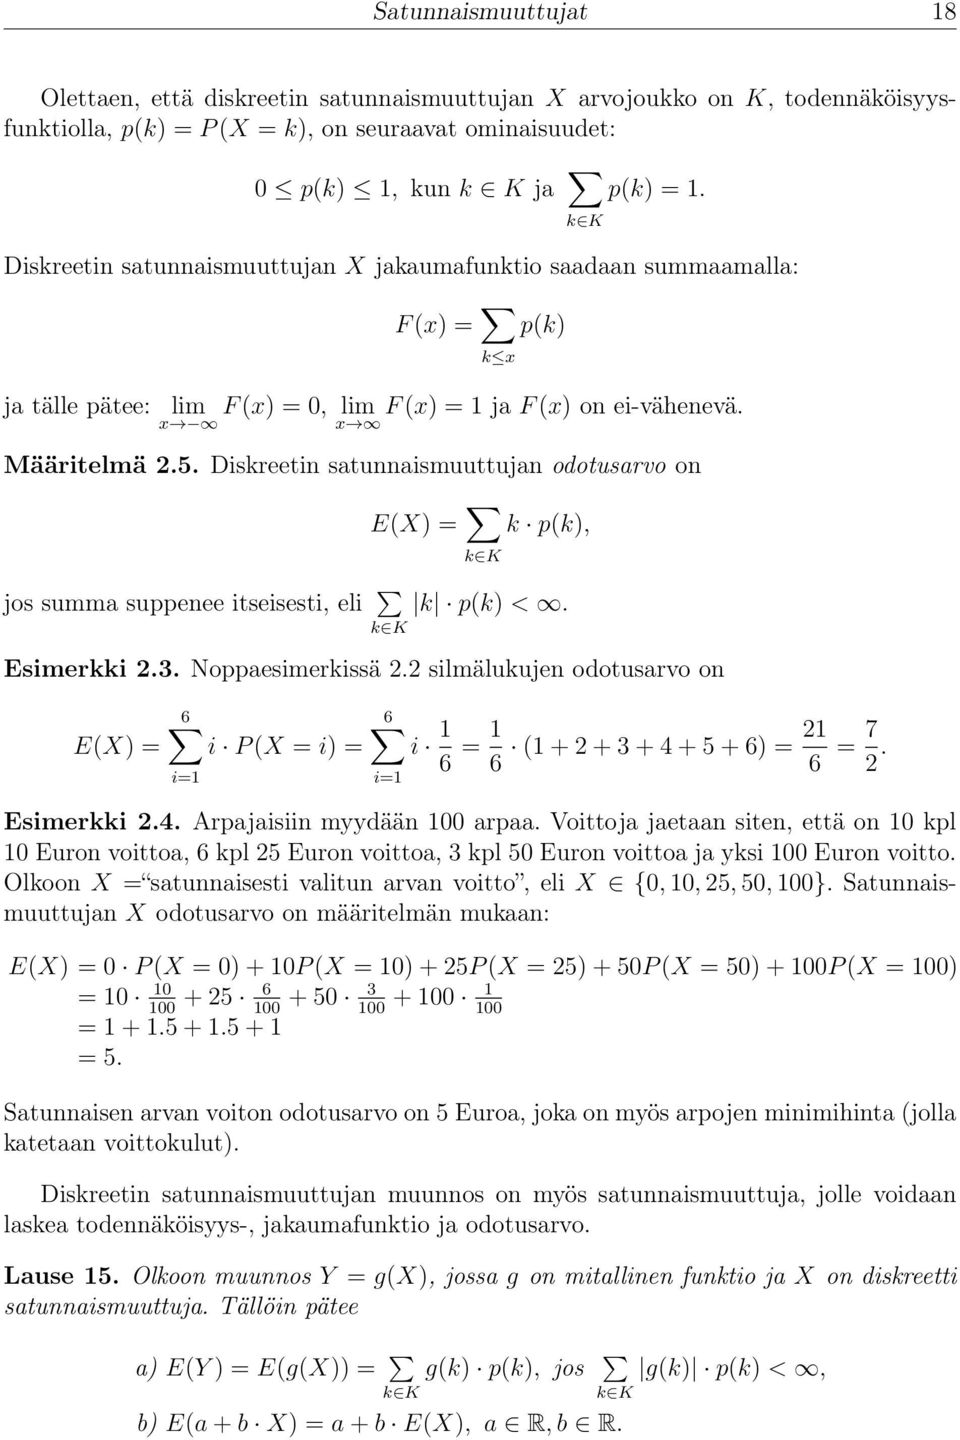 Diskreetin satunnaismuuttujan odotusarvo on jos summa suppenee itseisesti, eli E(X) = k K k p(k), k K k p(k) <. Esimerkki 2.3. Noppaesimerkissä 2.